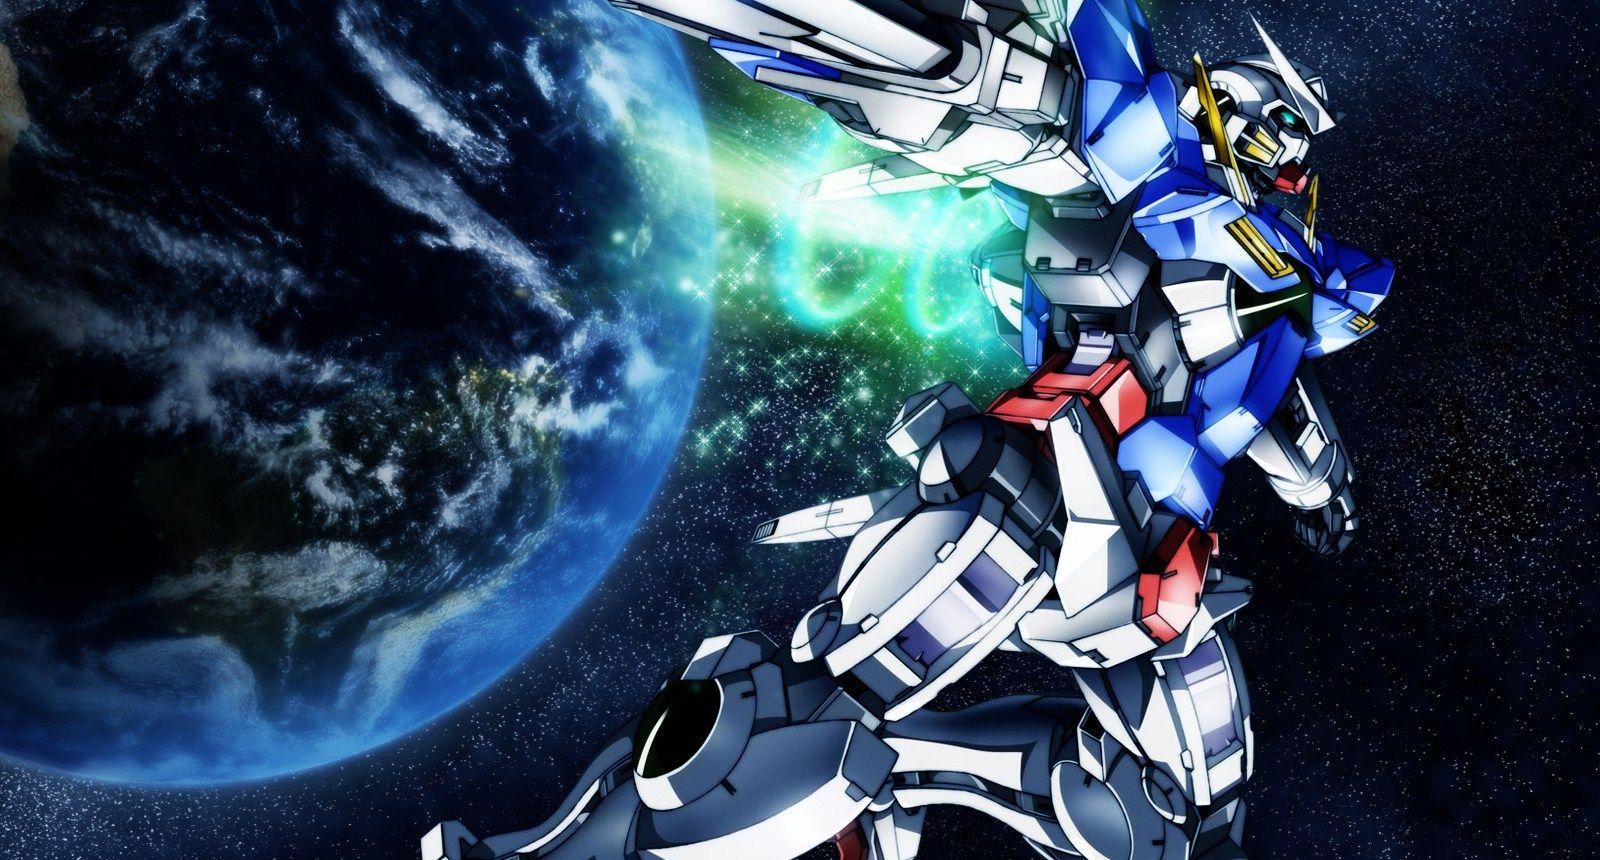 V.72: Gundam Wallpaper, HD Image of Gundam, Ultra HD 4K Gundam